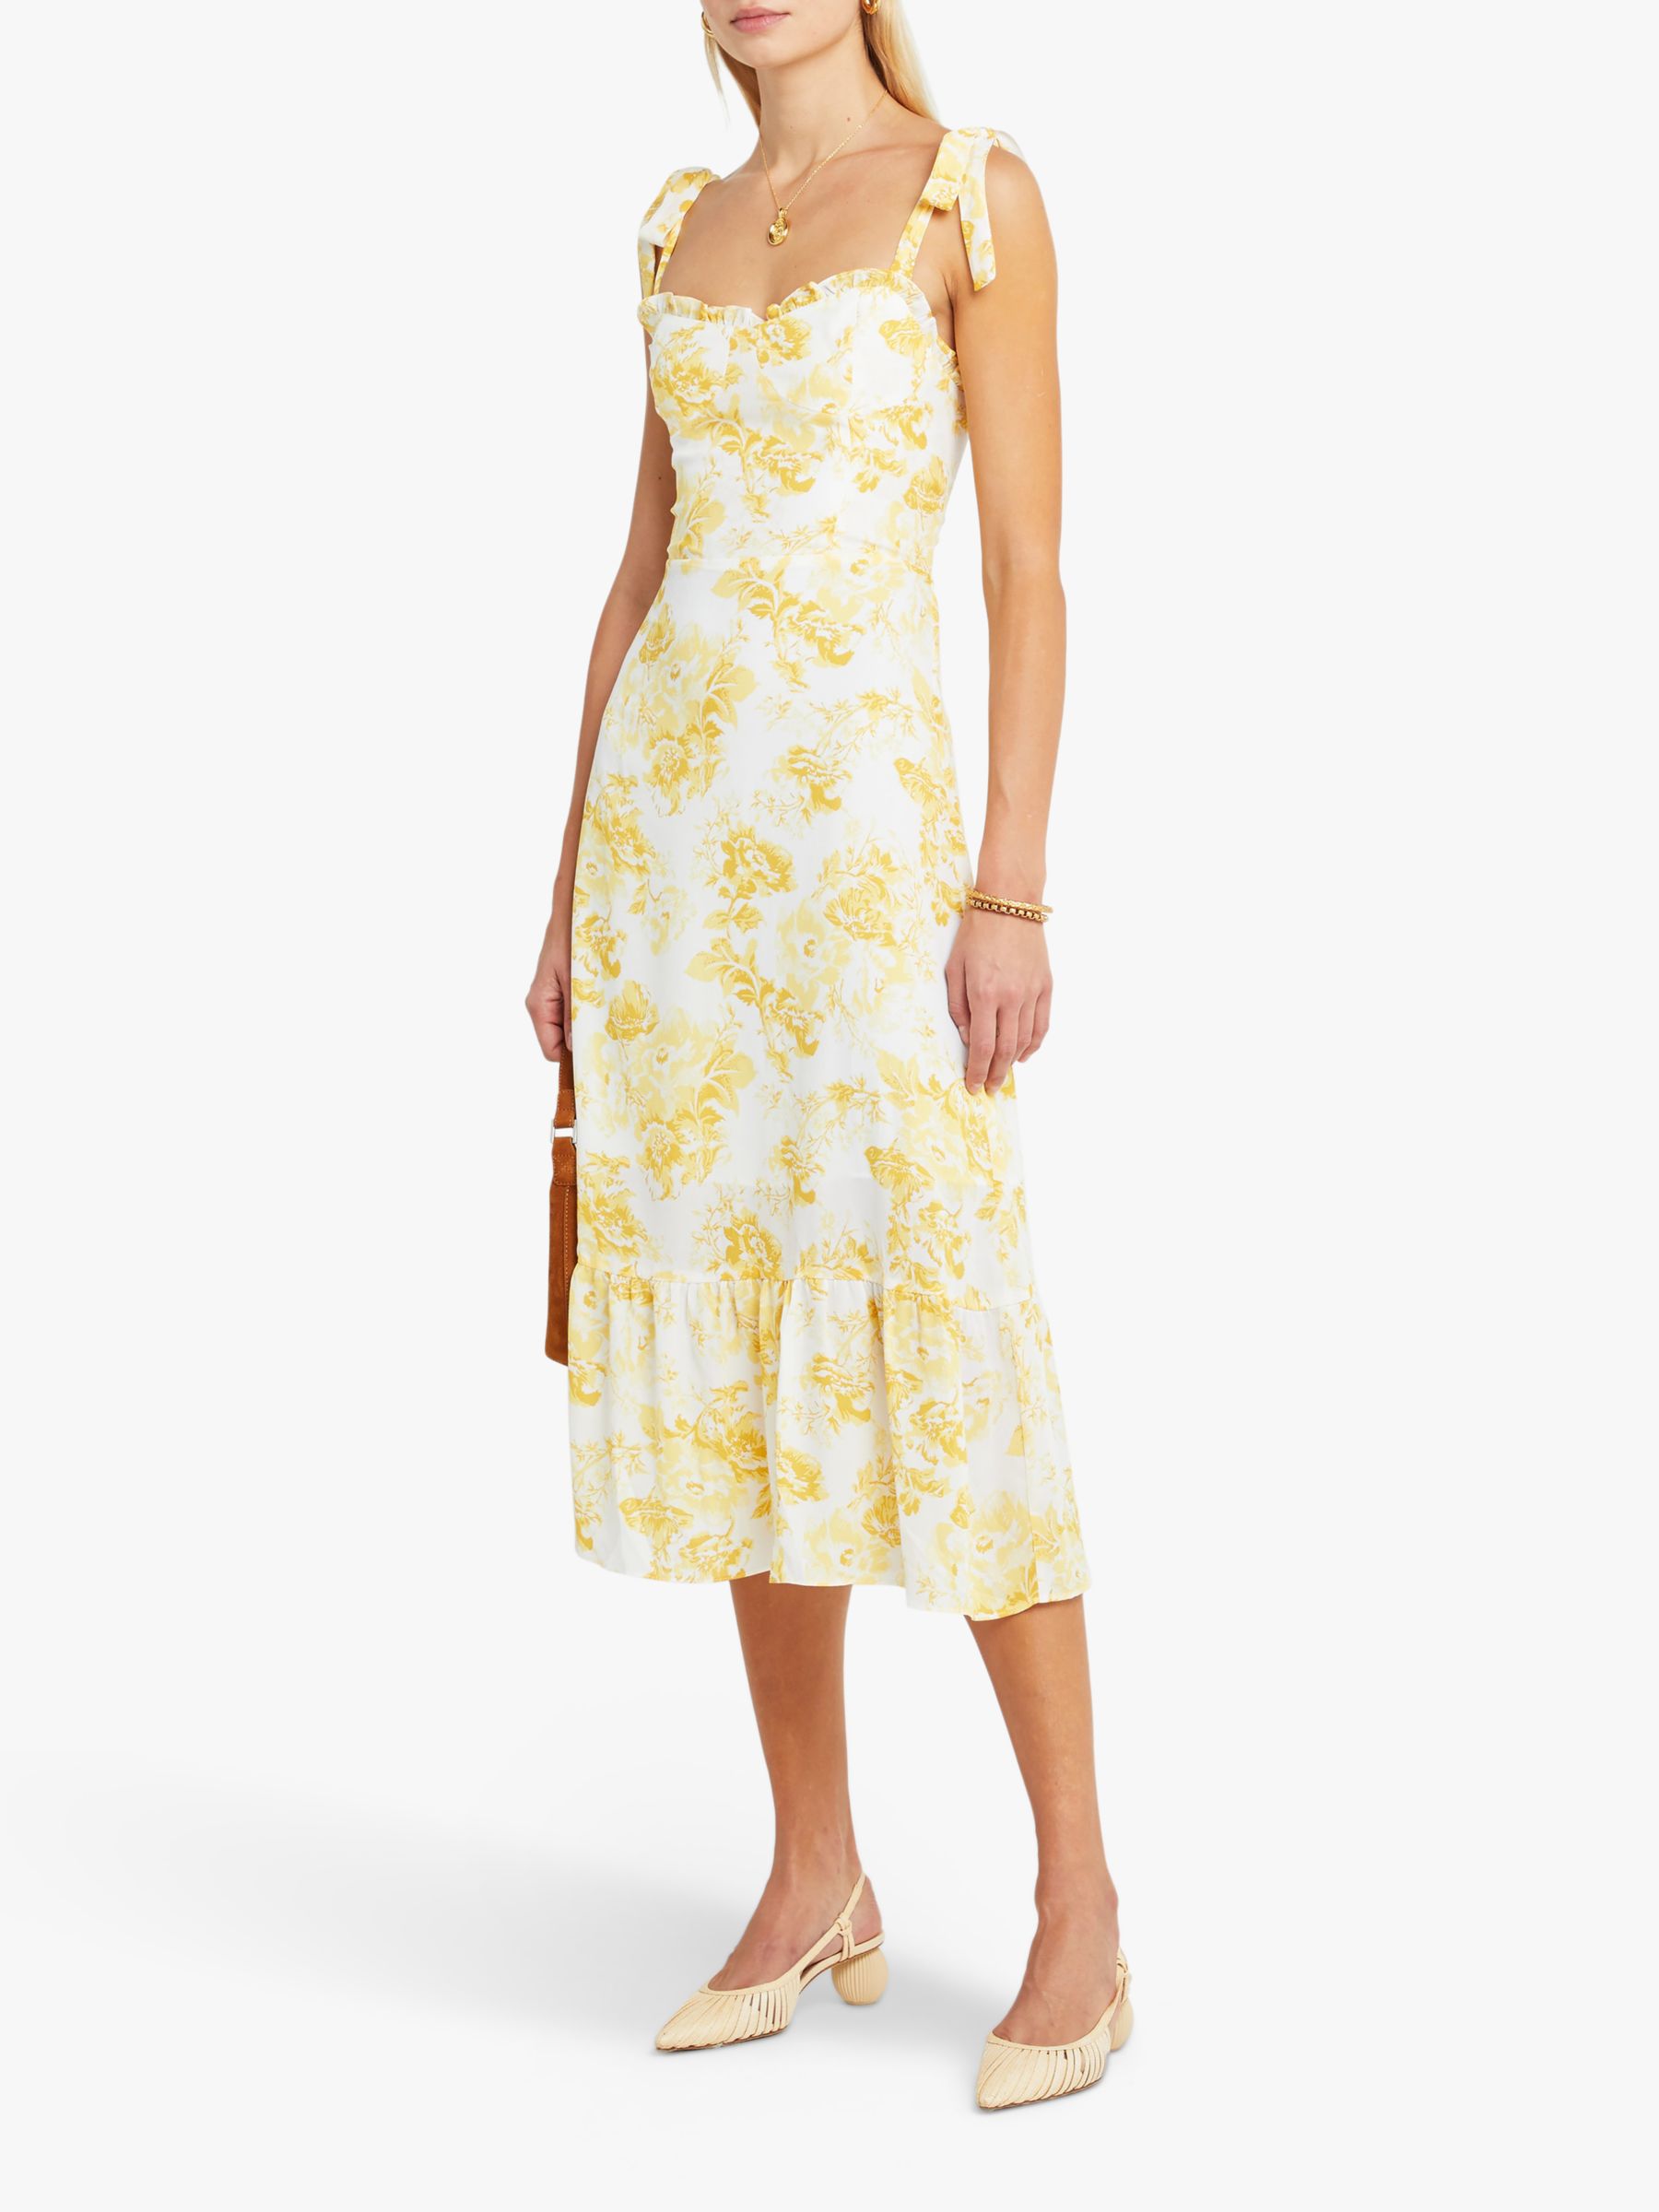 o.p.t Toile de Jouy Floral Print Sleeveless Midi Dress, Yellow, 10